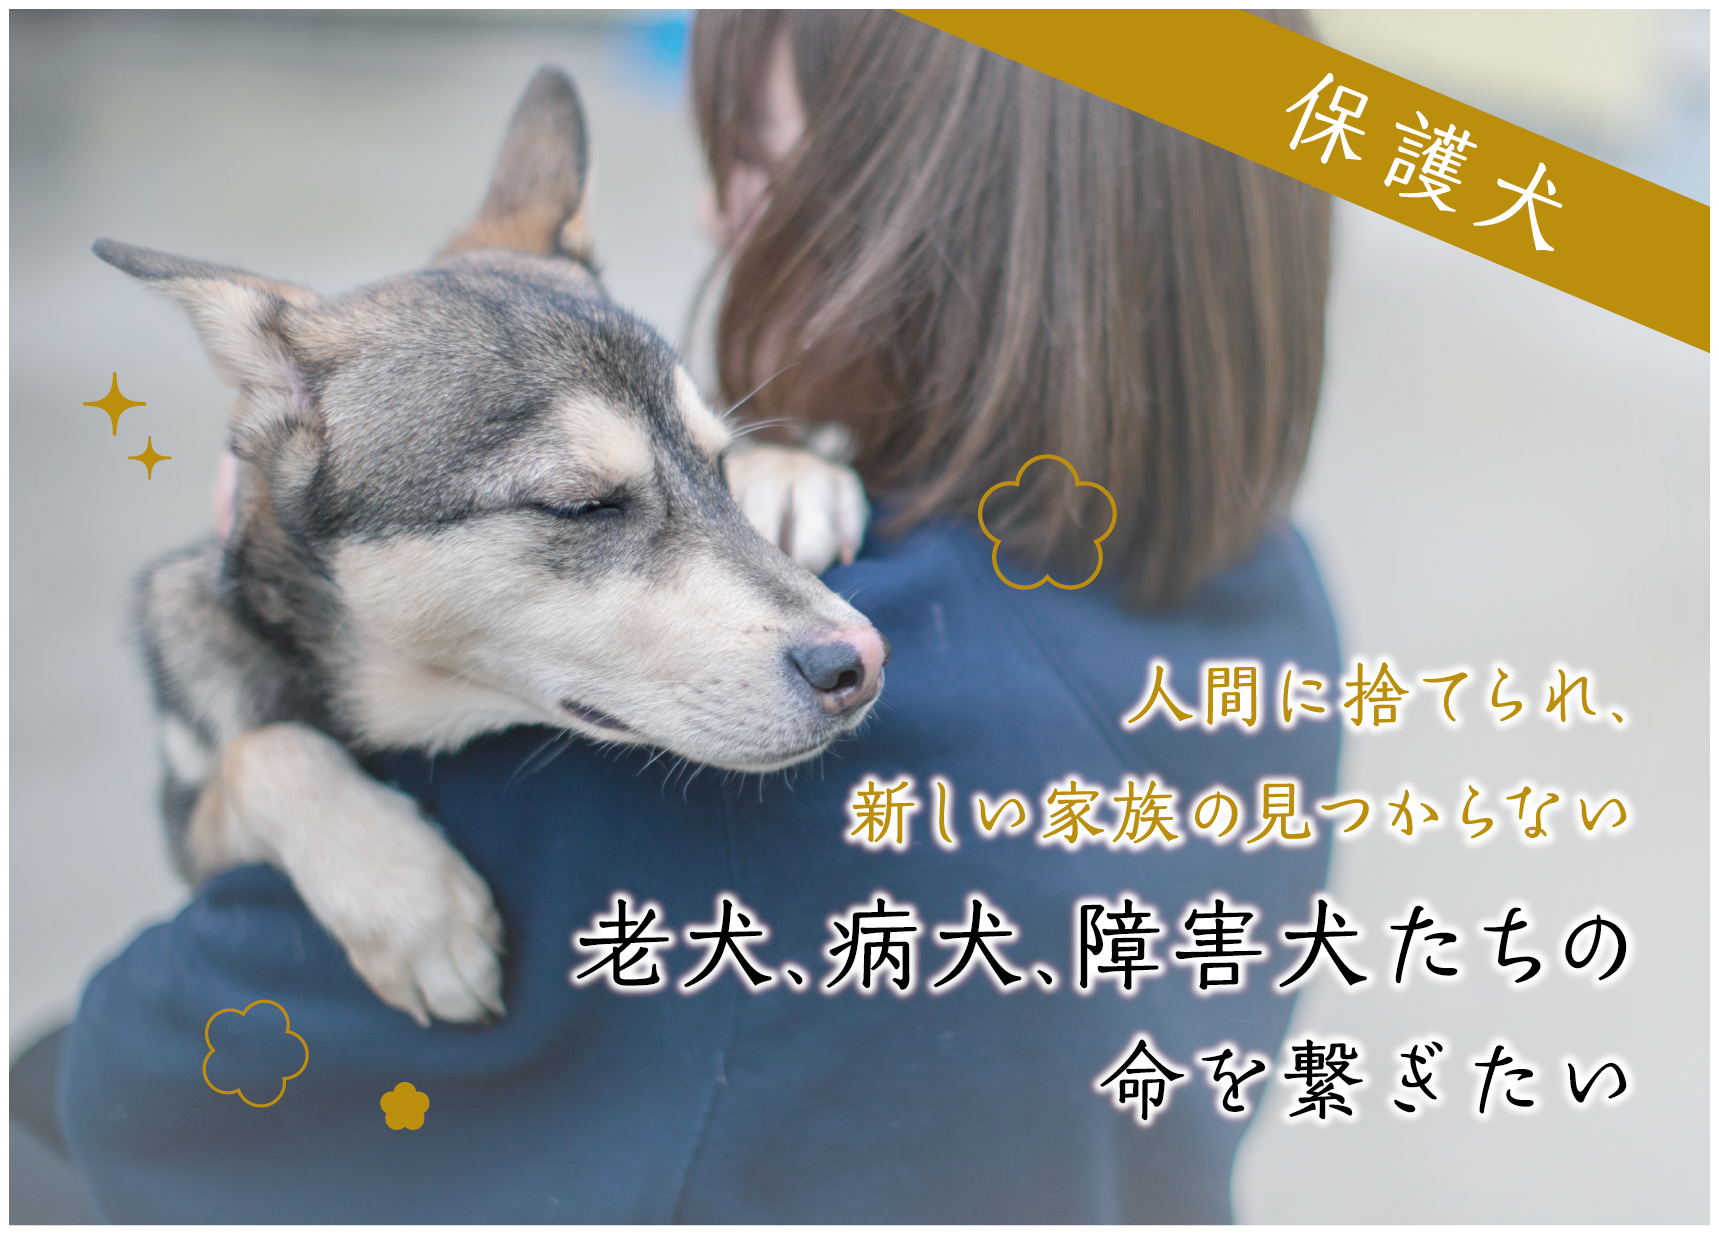 医療 介護が必要な保護犬のために ピースワンコ ジャパン 3 1 月 からクラウドファンディング開始 ピースウィンズ ジャパンのプレスリリース